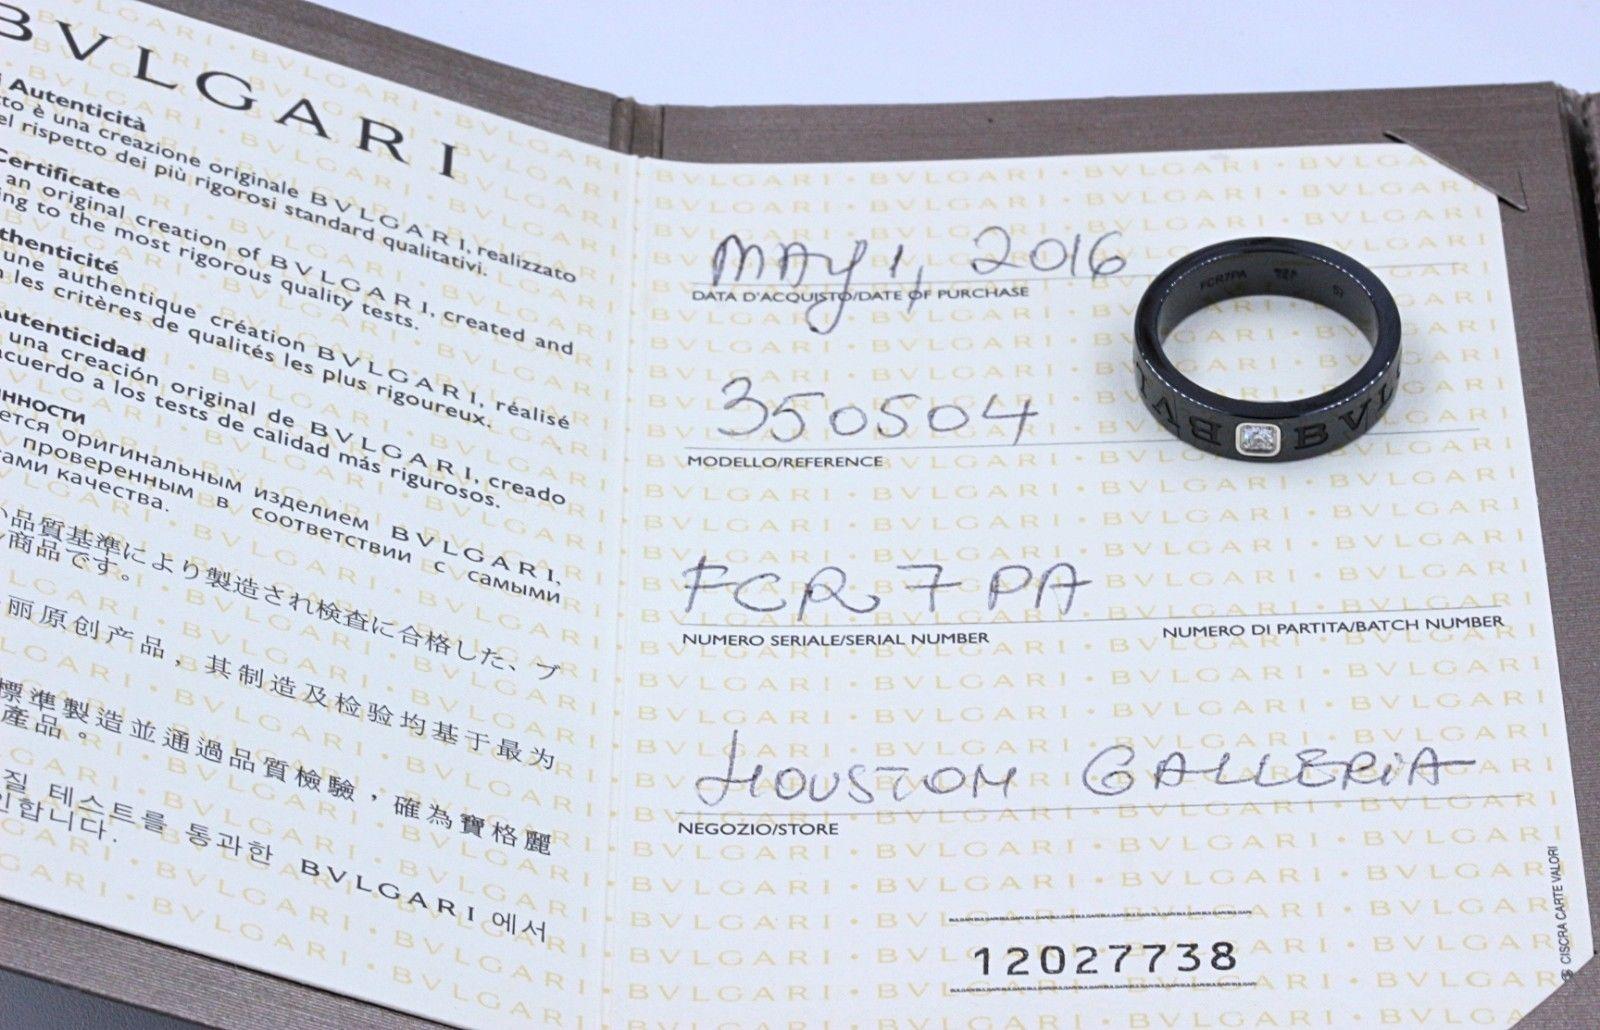 bvlgari bracelet serial number